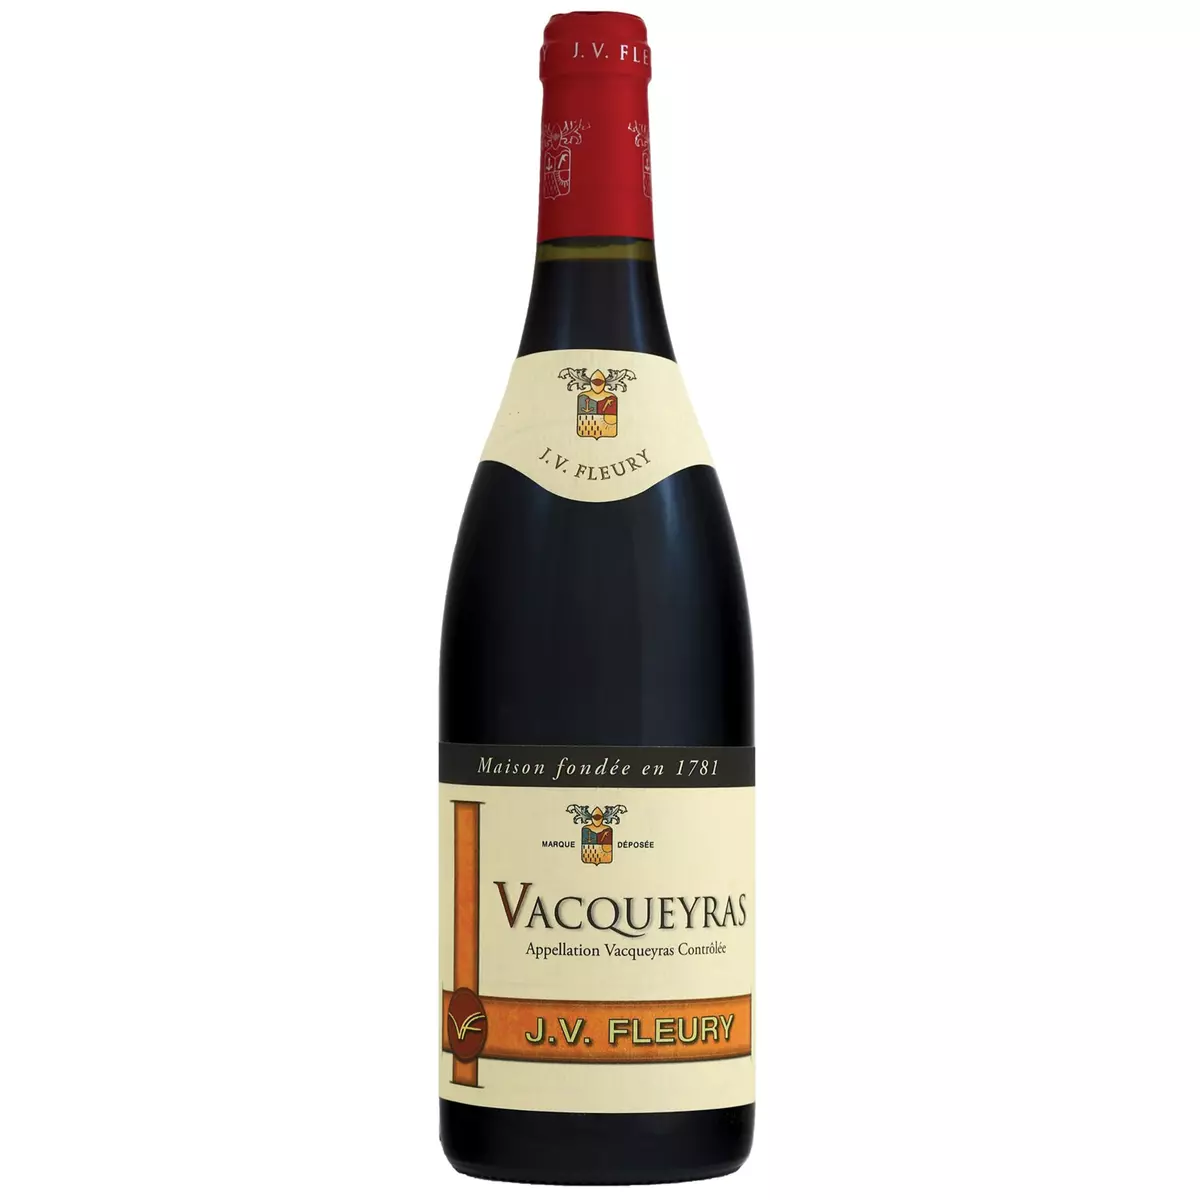 Vin rouge AOP Vacqueyras Vidal Fleury 2016 75cl